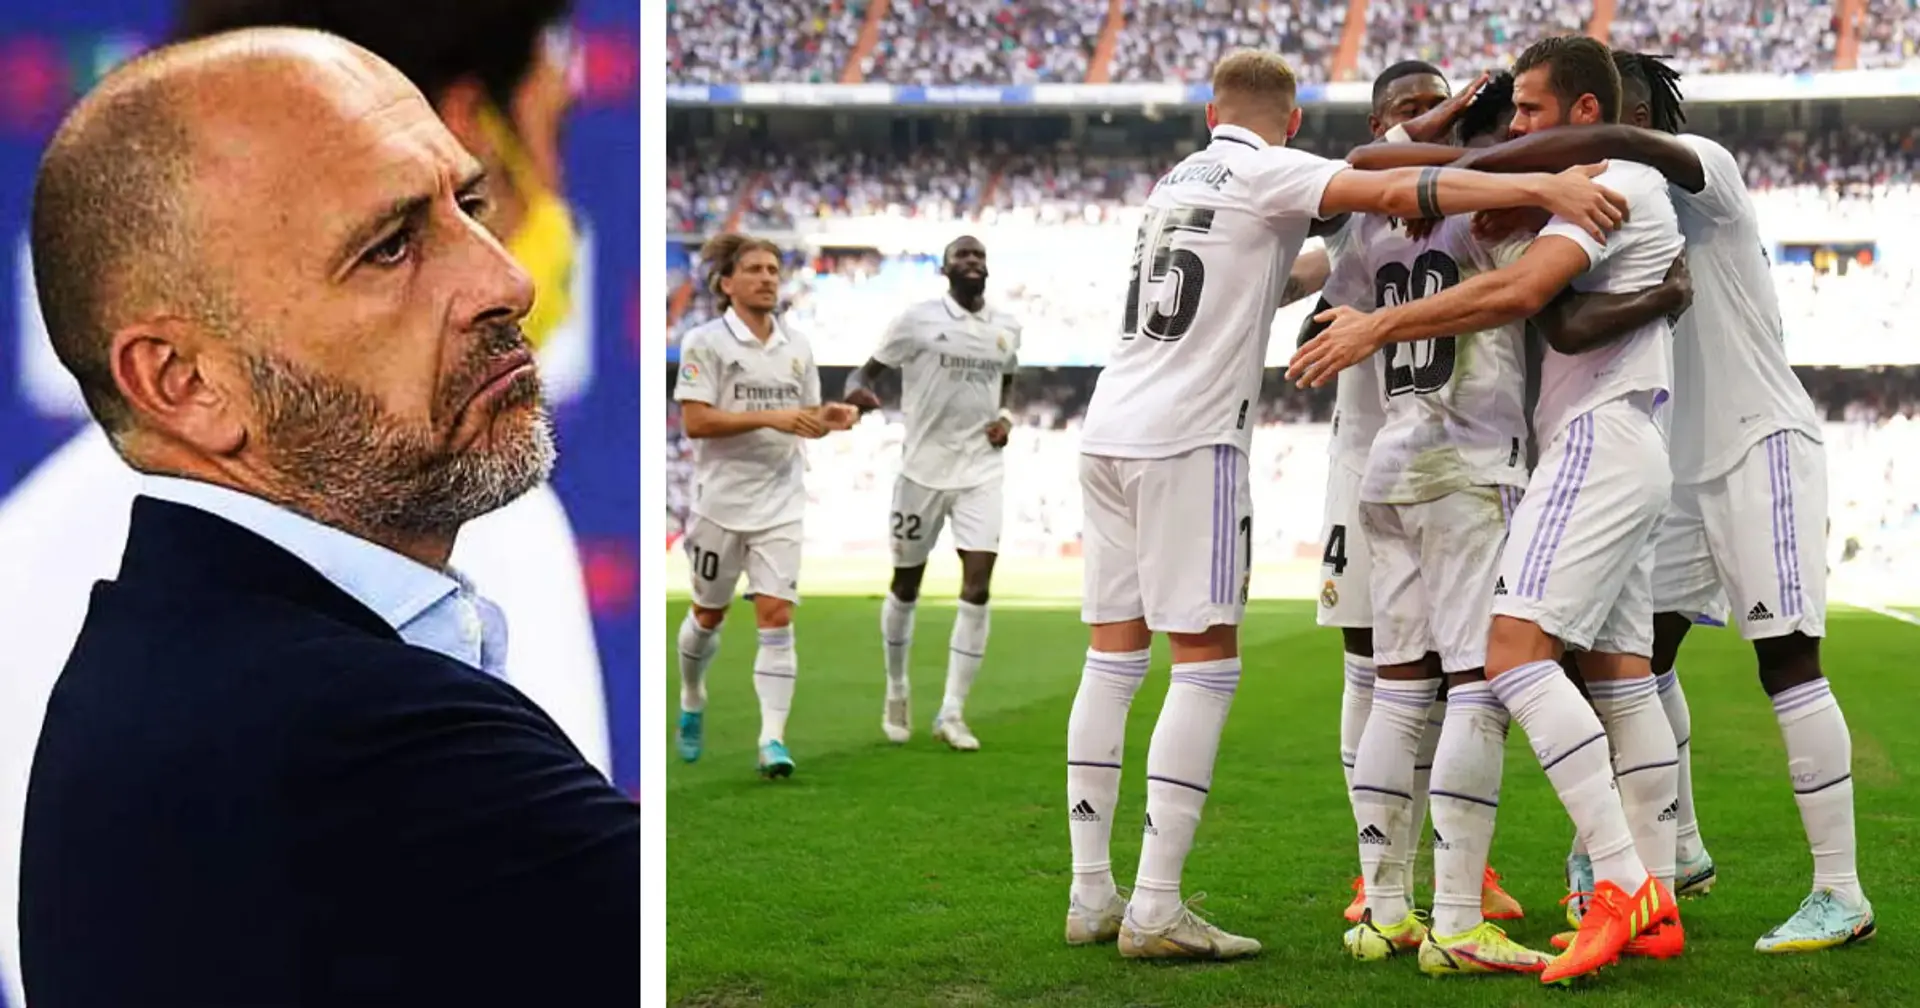 Il rinforzo in difesa può arrivare dal Real Madrid: l'Inter ha messo gli occhi su un esubero dei Blancos